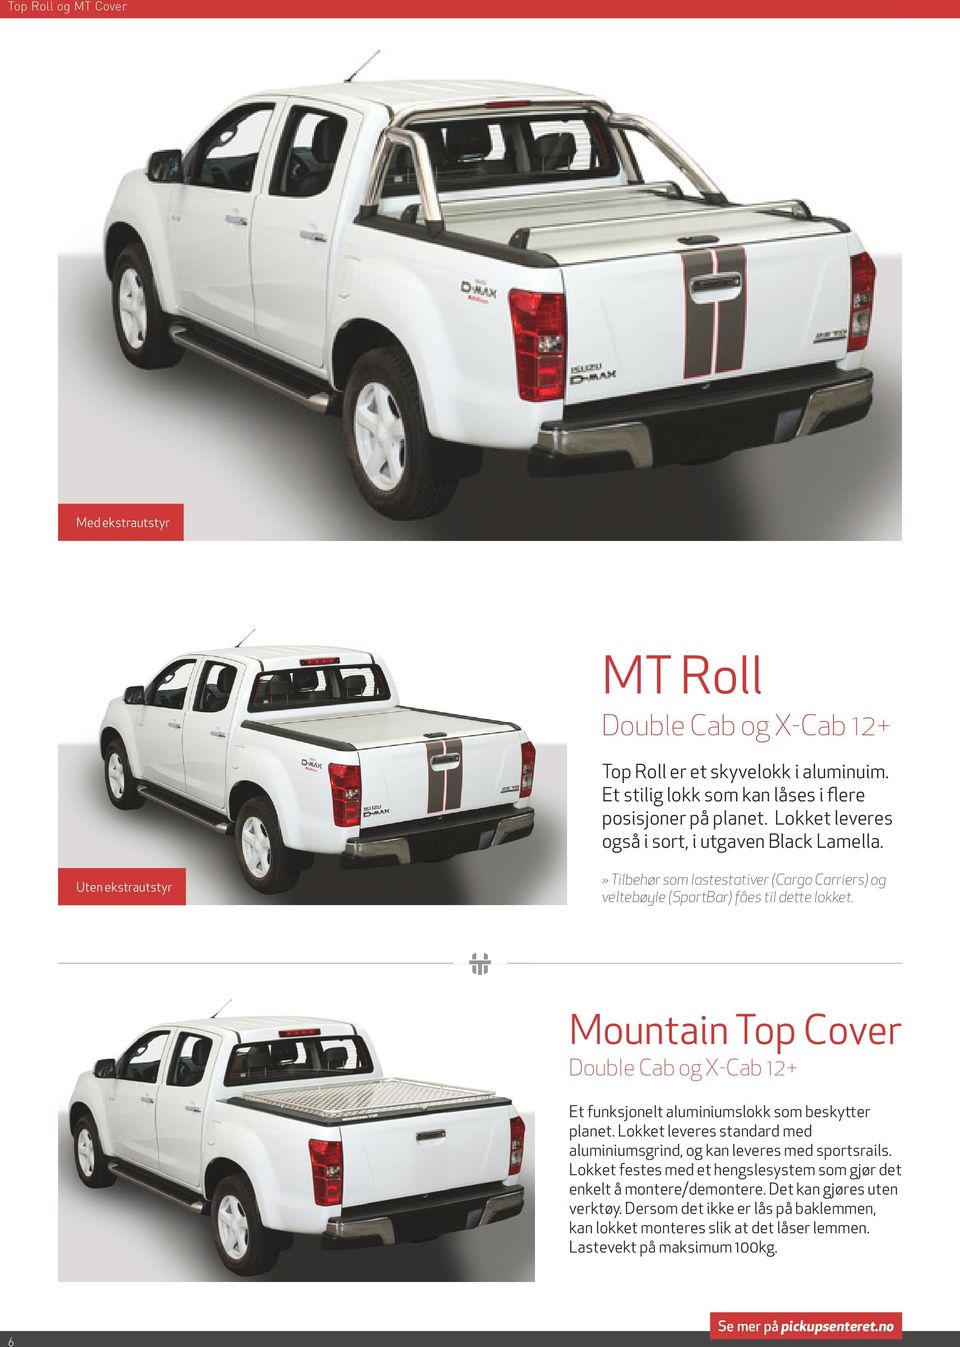 Mountain Top Cover Double Cab og X-Cab 12+ Et funksjonelt aluminiumslokk som beskytter planet. Lokket leveres standard med aluminiumsgrind, og kan leveres med sportsrails.